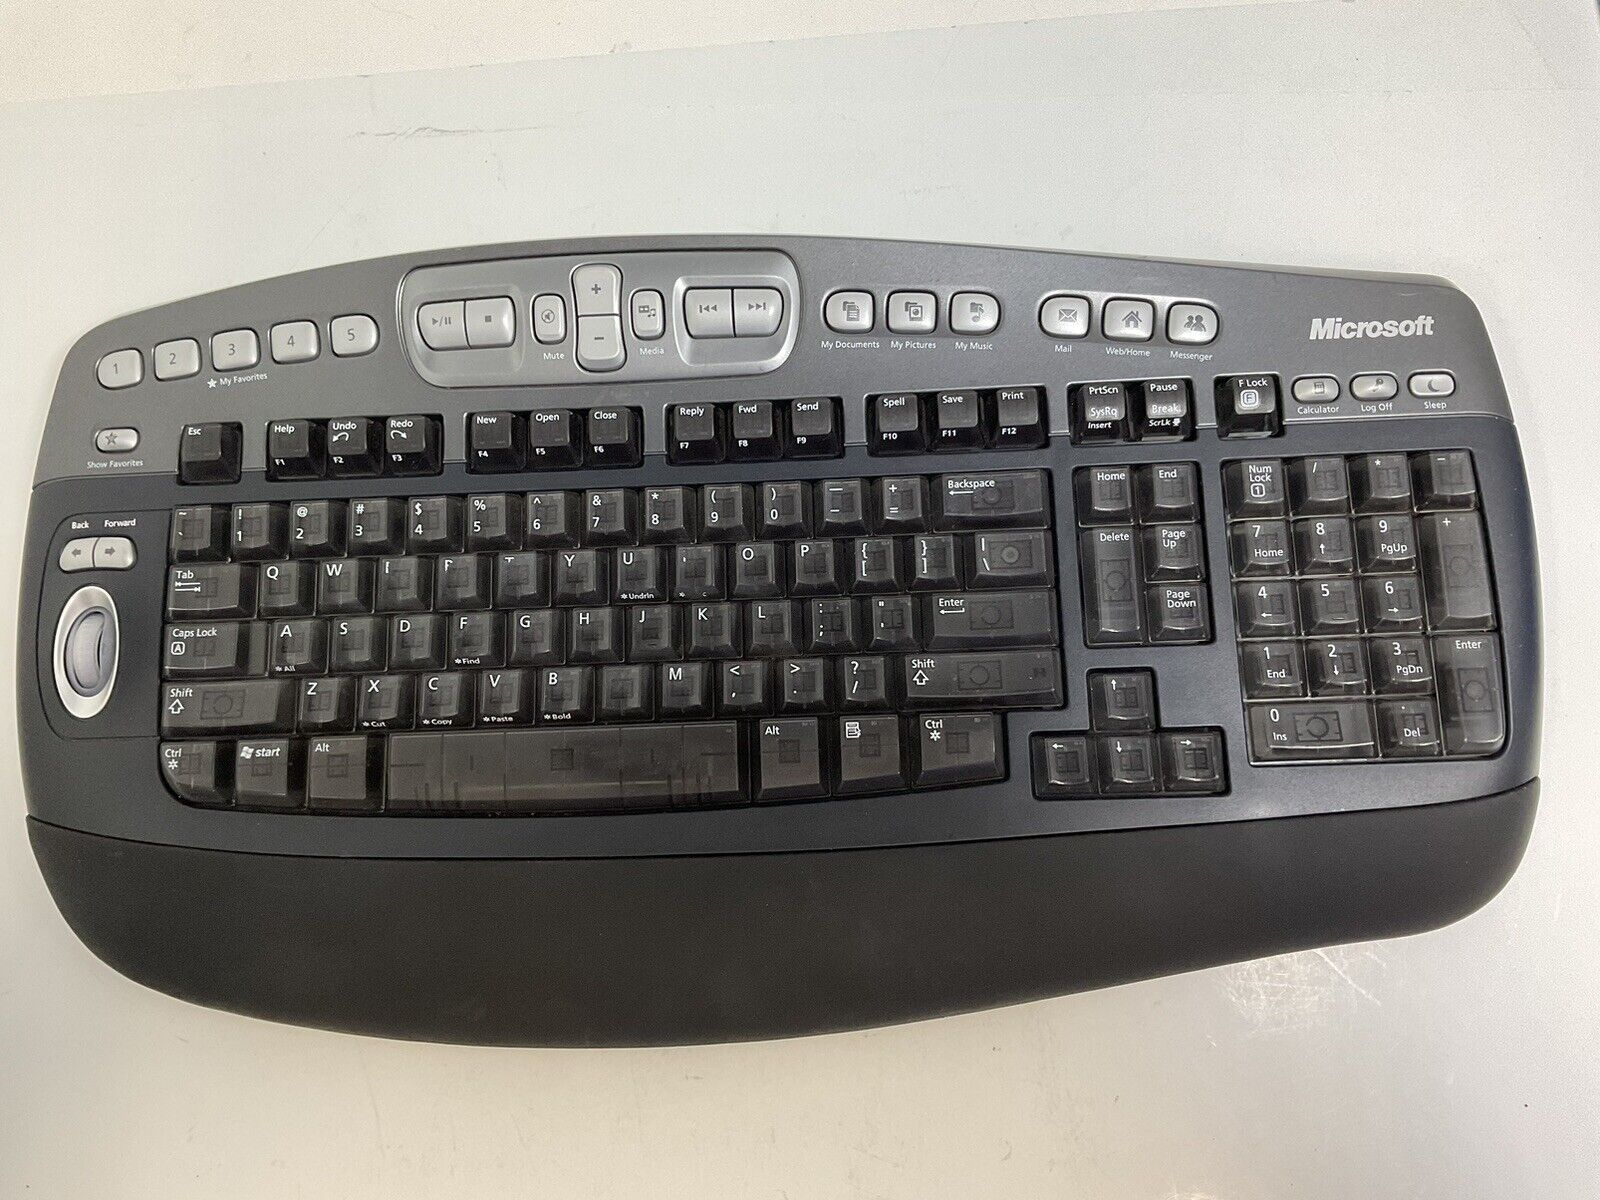 Microsoft Wireless Desktop Elite Keyboard Model 1011 Missing Dongle